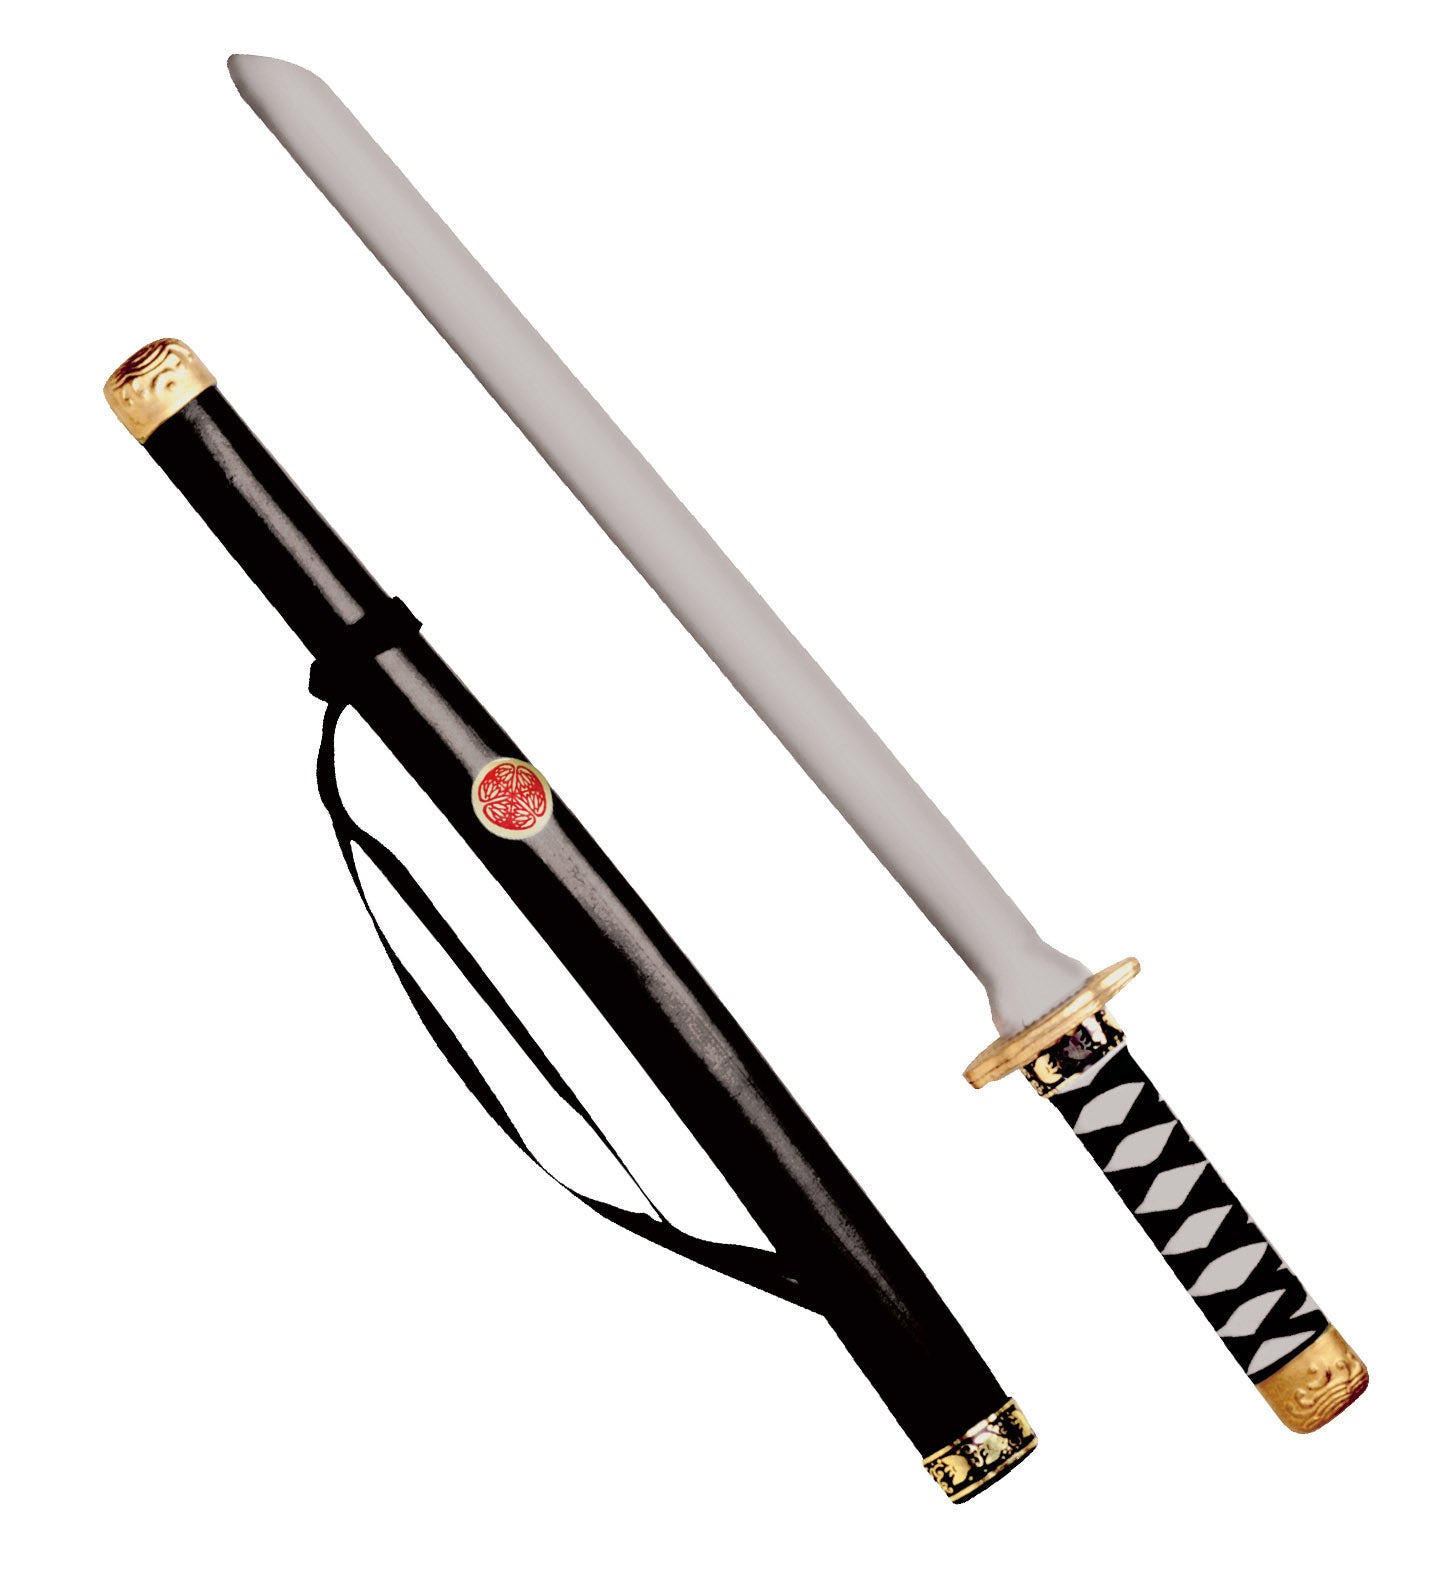 Japanese Katana Sword 60cm